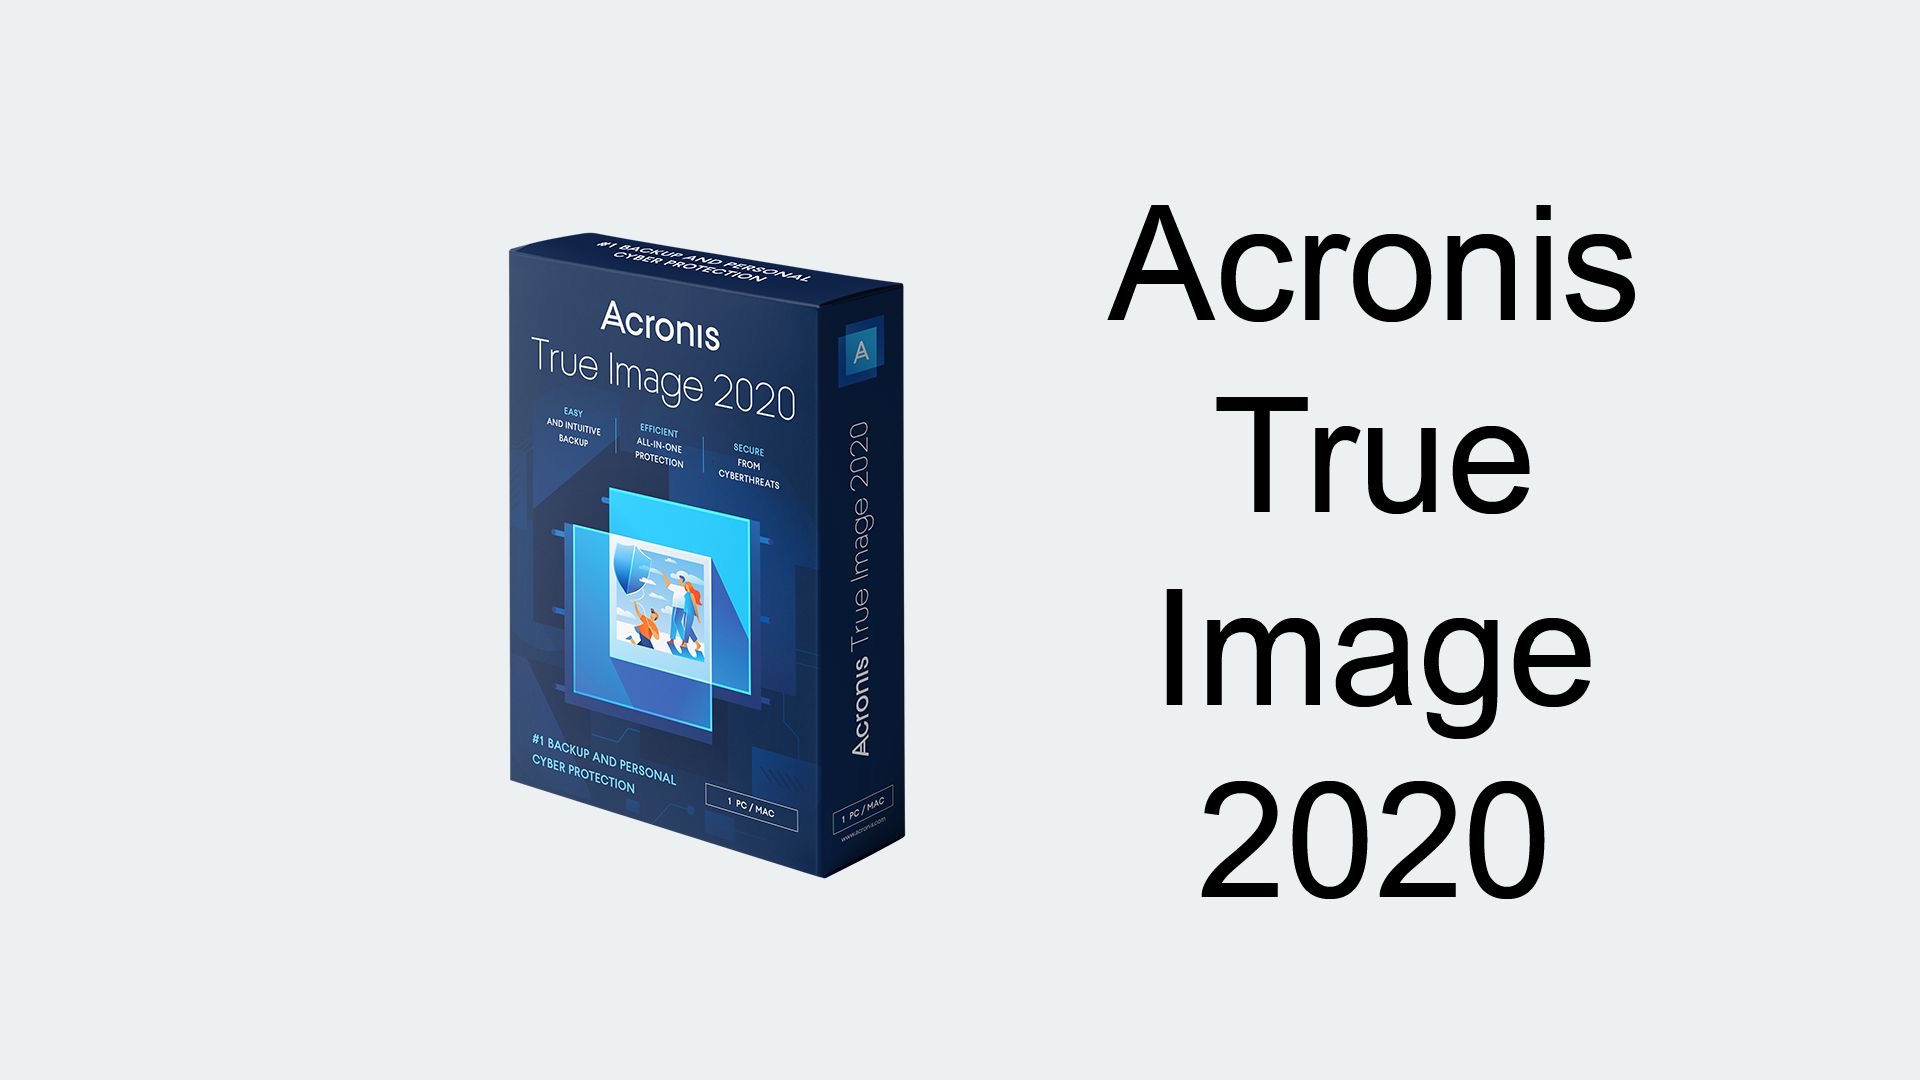 Acronis True Image 2020 recensione - Fabio Nieddu